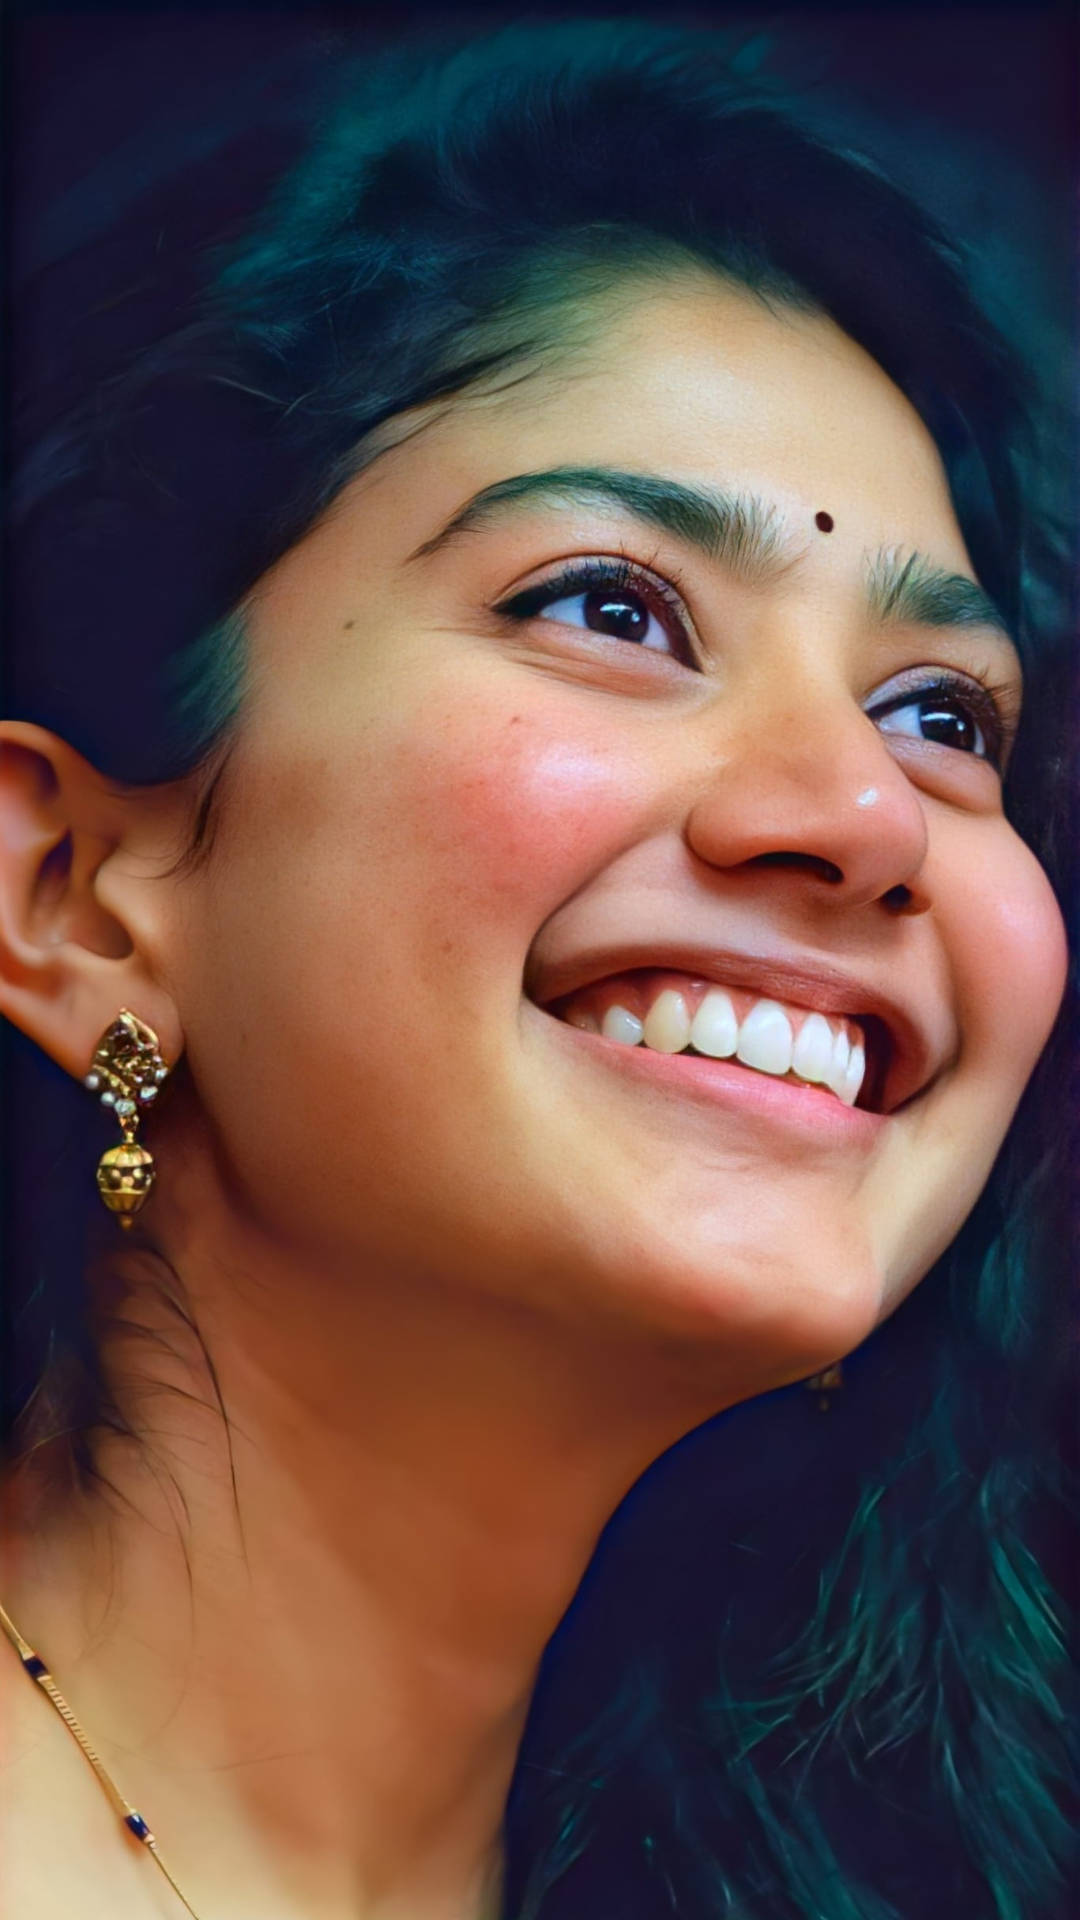 Sai Pallavi Genuine Smile Wallpaper